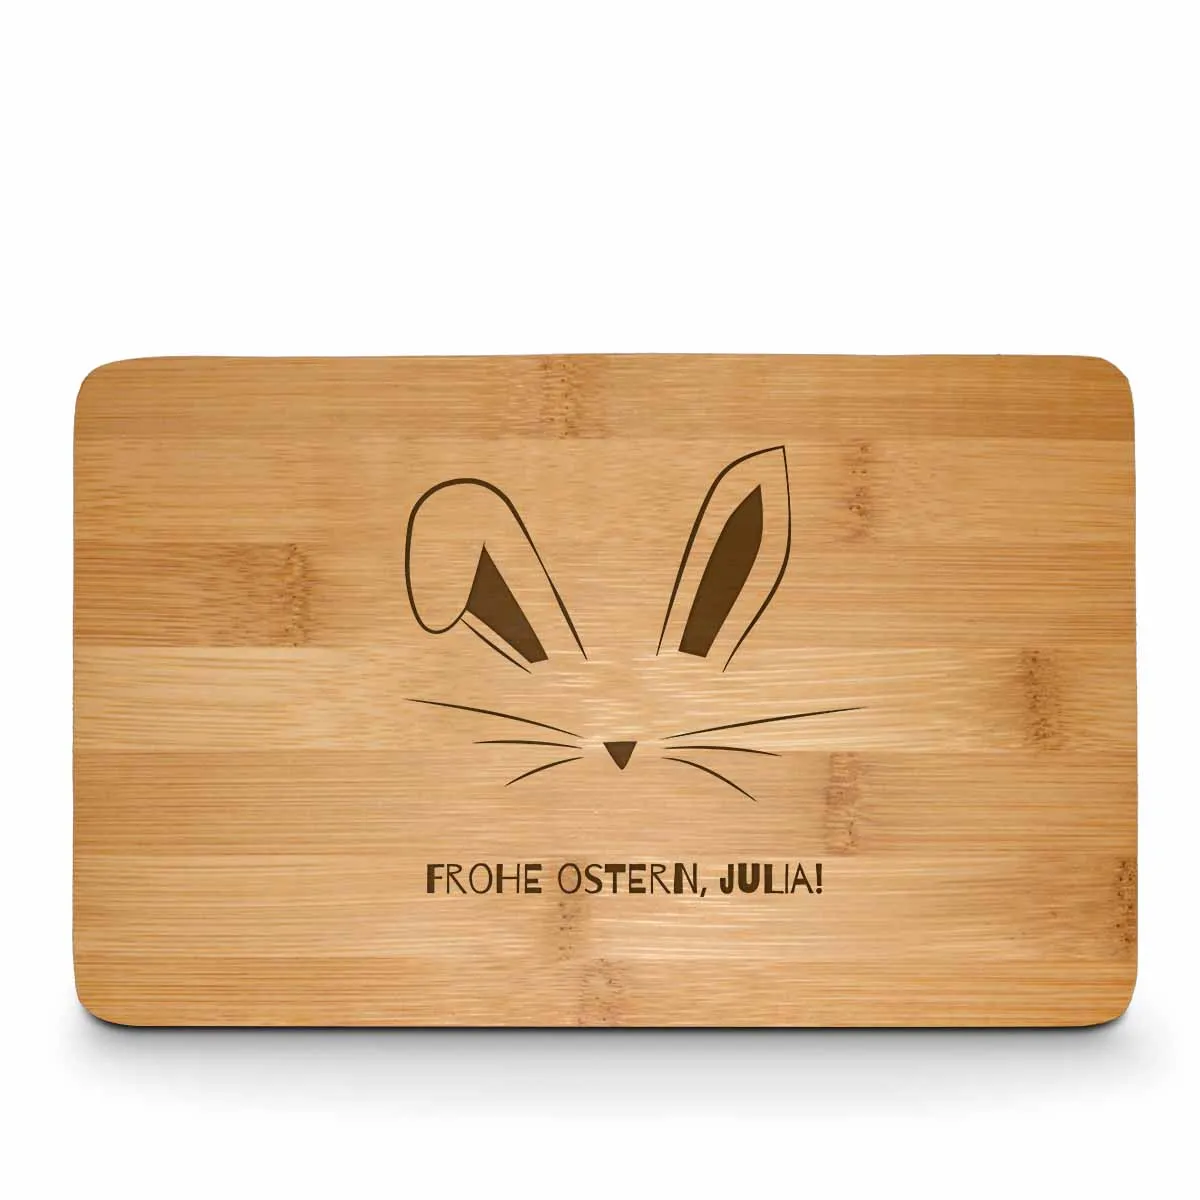 Planche à déjeuner personnalisable avec prénom - Pâques - Oreilles de lapin avec gravure en bois de bambou de haute qualité | Idée cadeau | Planche à découper | Planche de cuisine